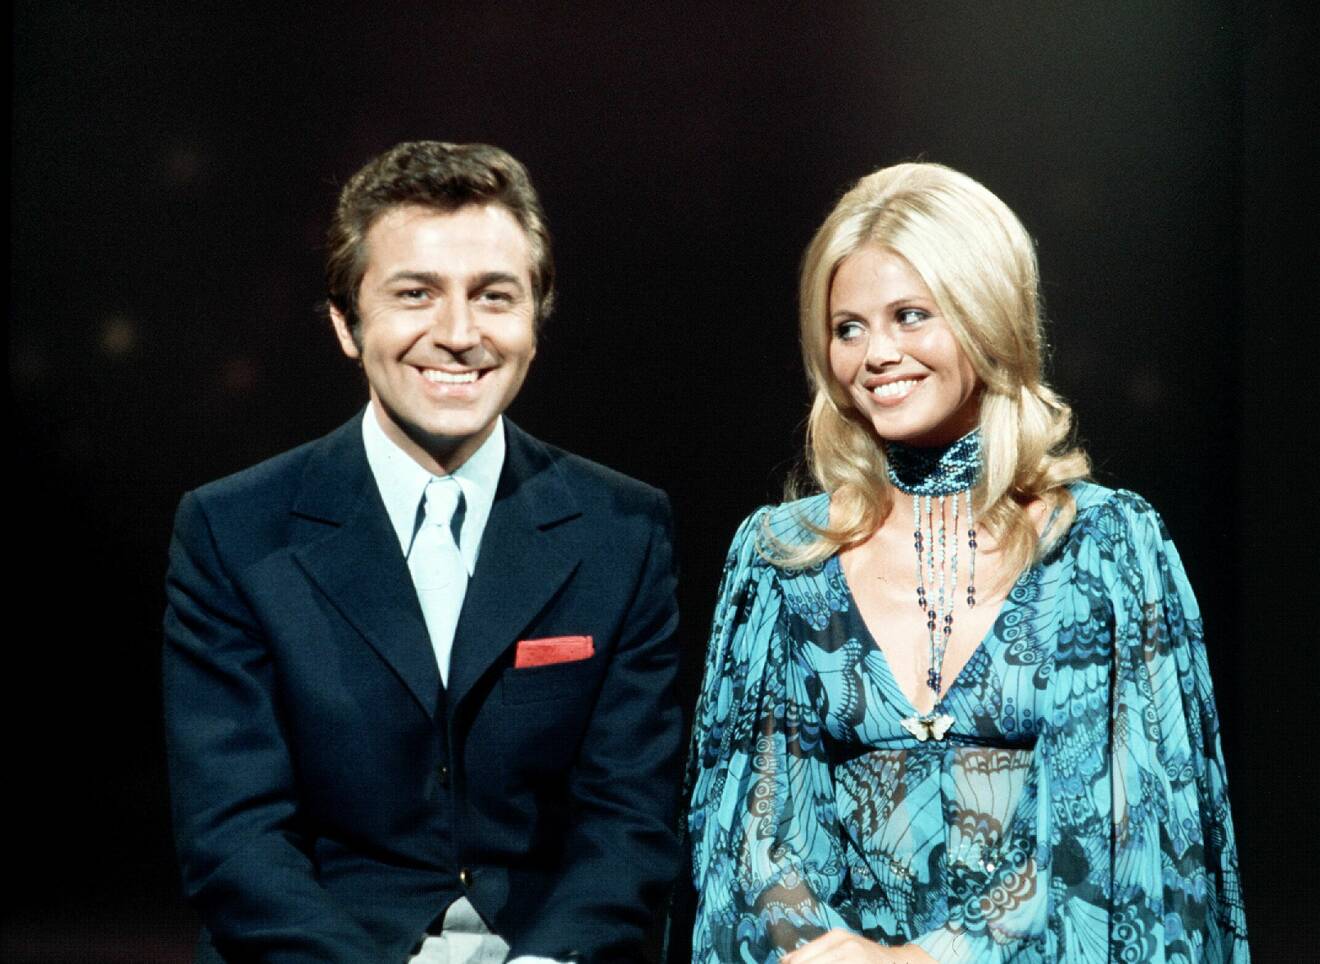 Des O'Connor and Britt Ekland "The Des O'Connor Show" 1970.